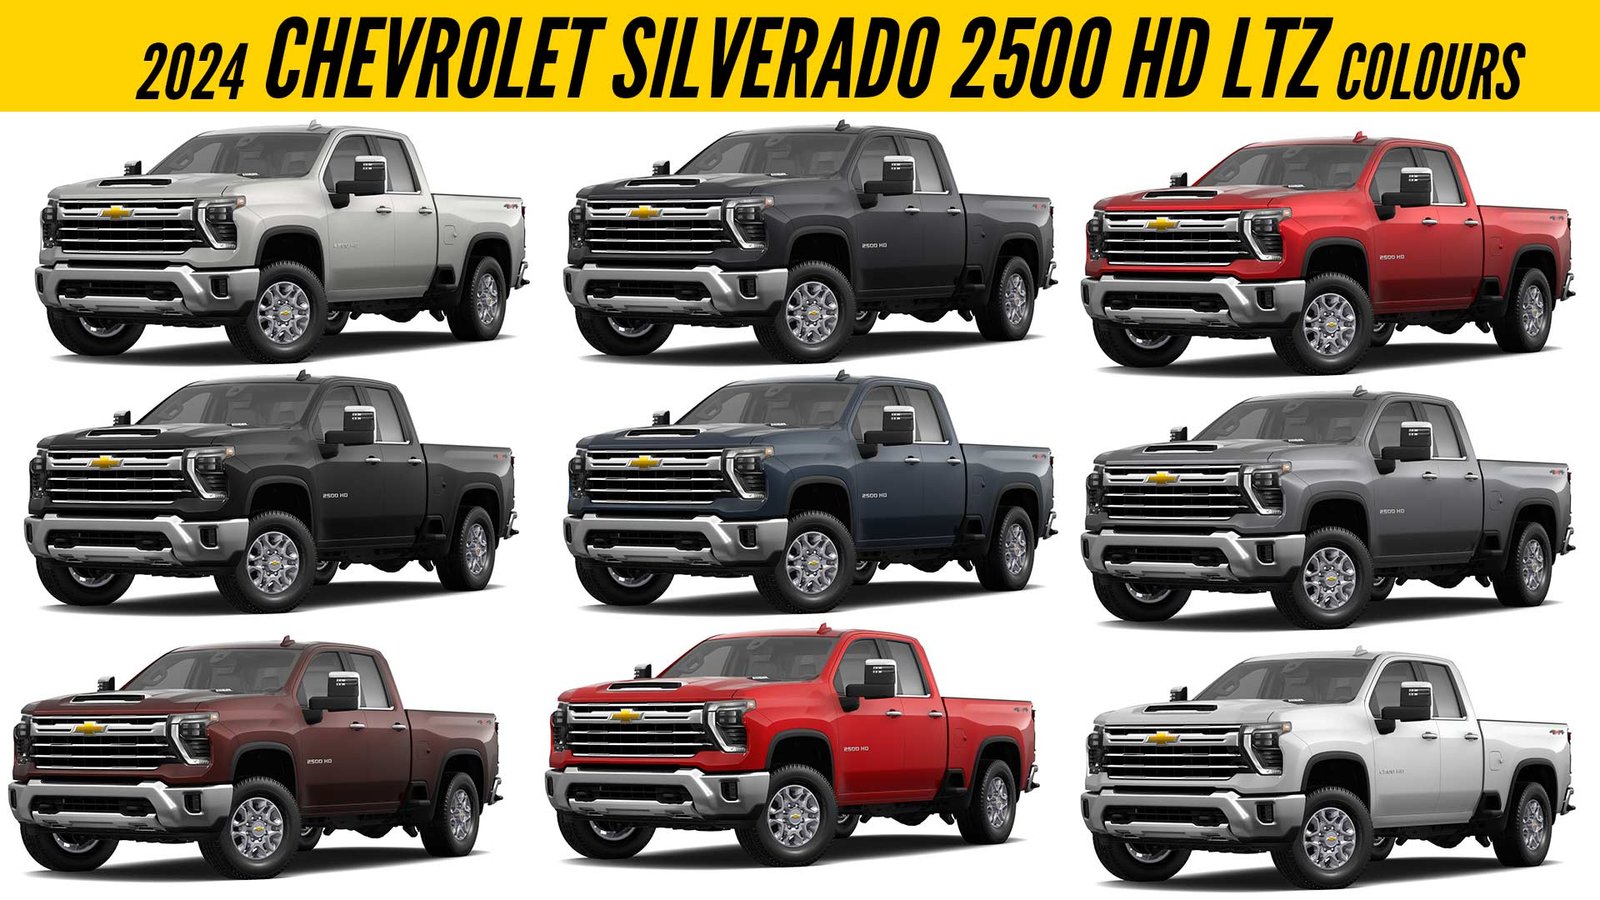 2024 Chevy Silverado 2500hd Colors Andree